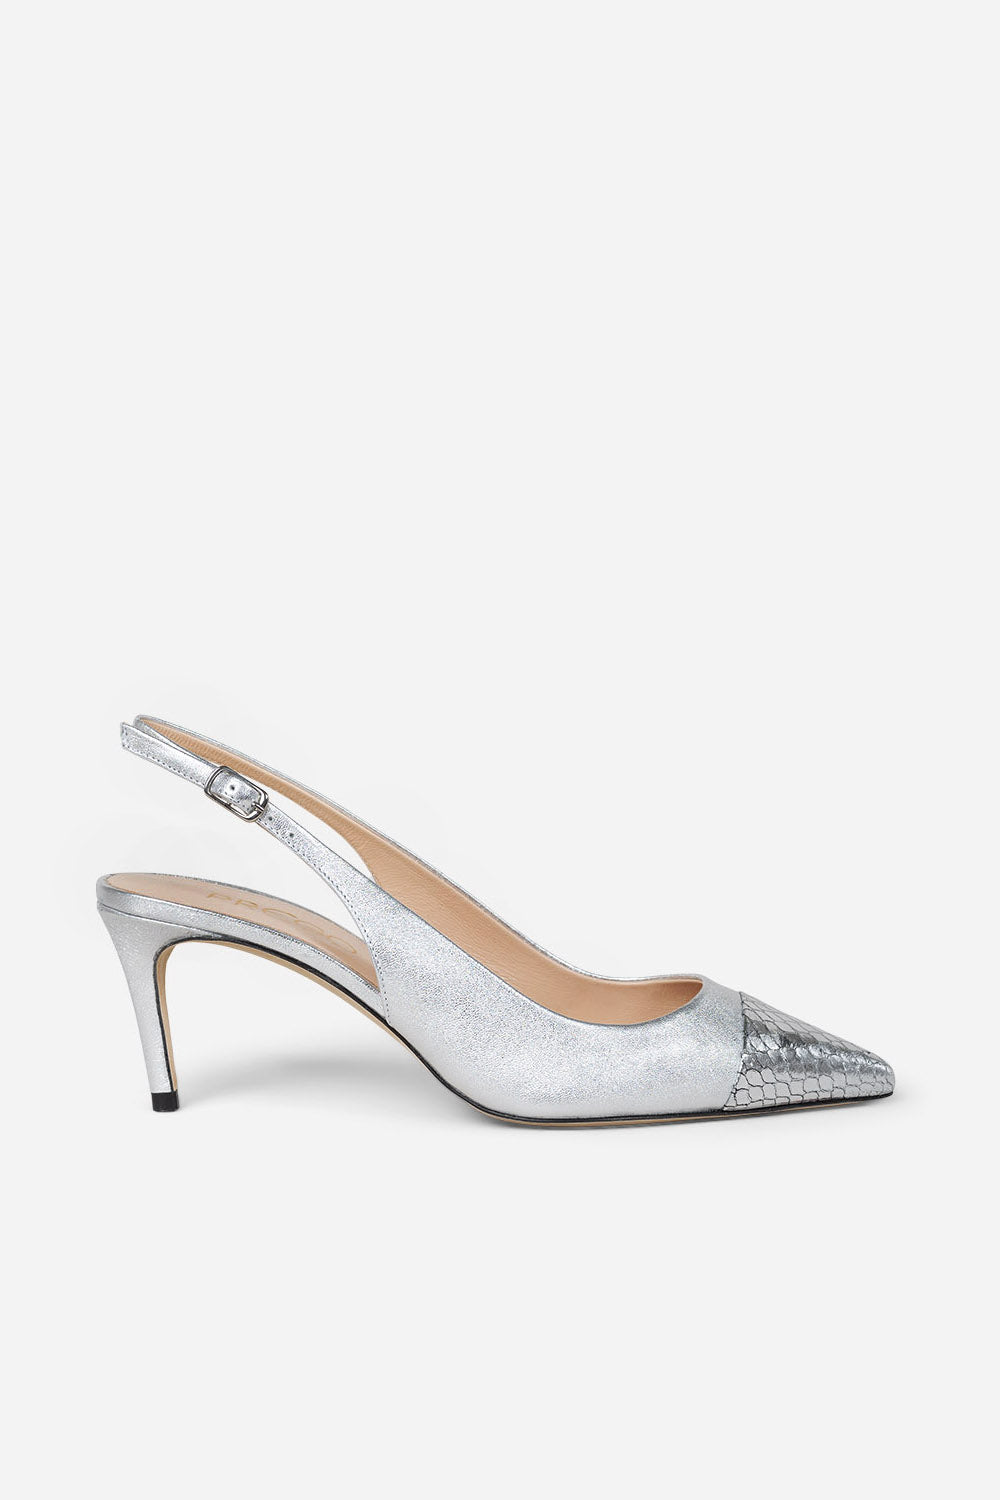 Oxanne Lam Shoe - silver